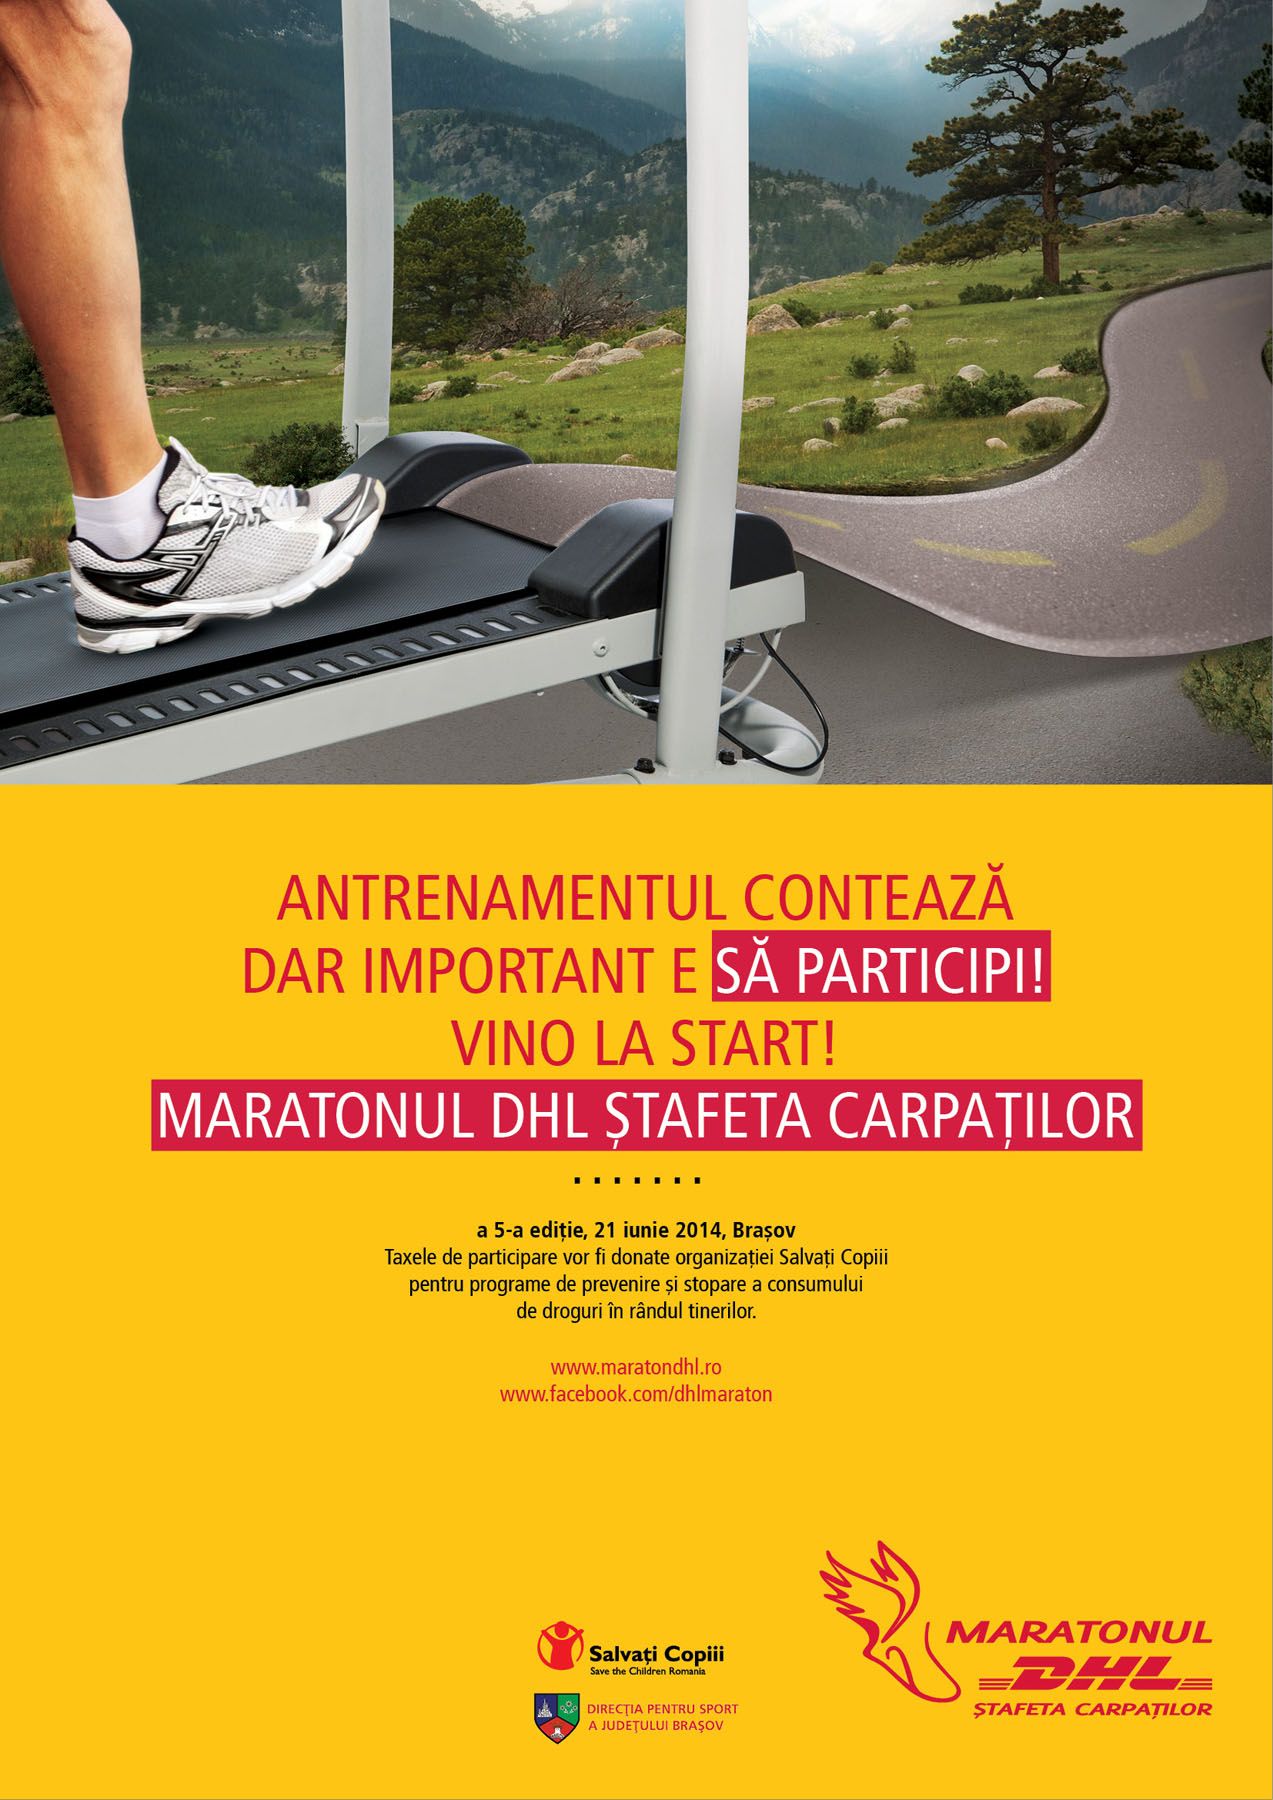 Urmează o nouă ediție a Maratonului DHL Ștafeta Carpaților